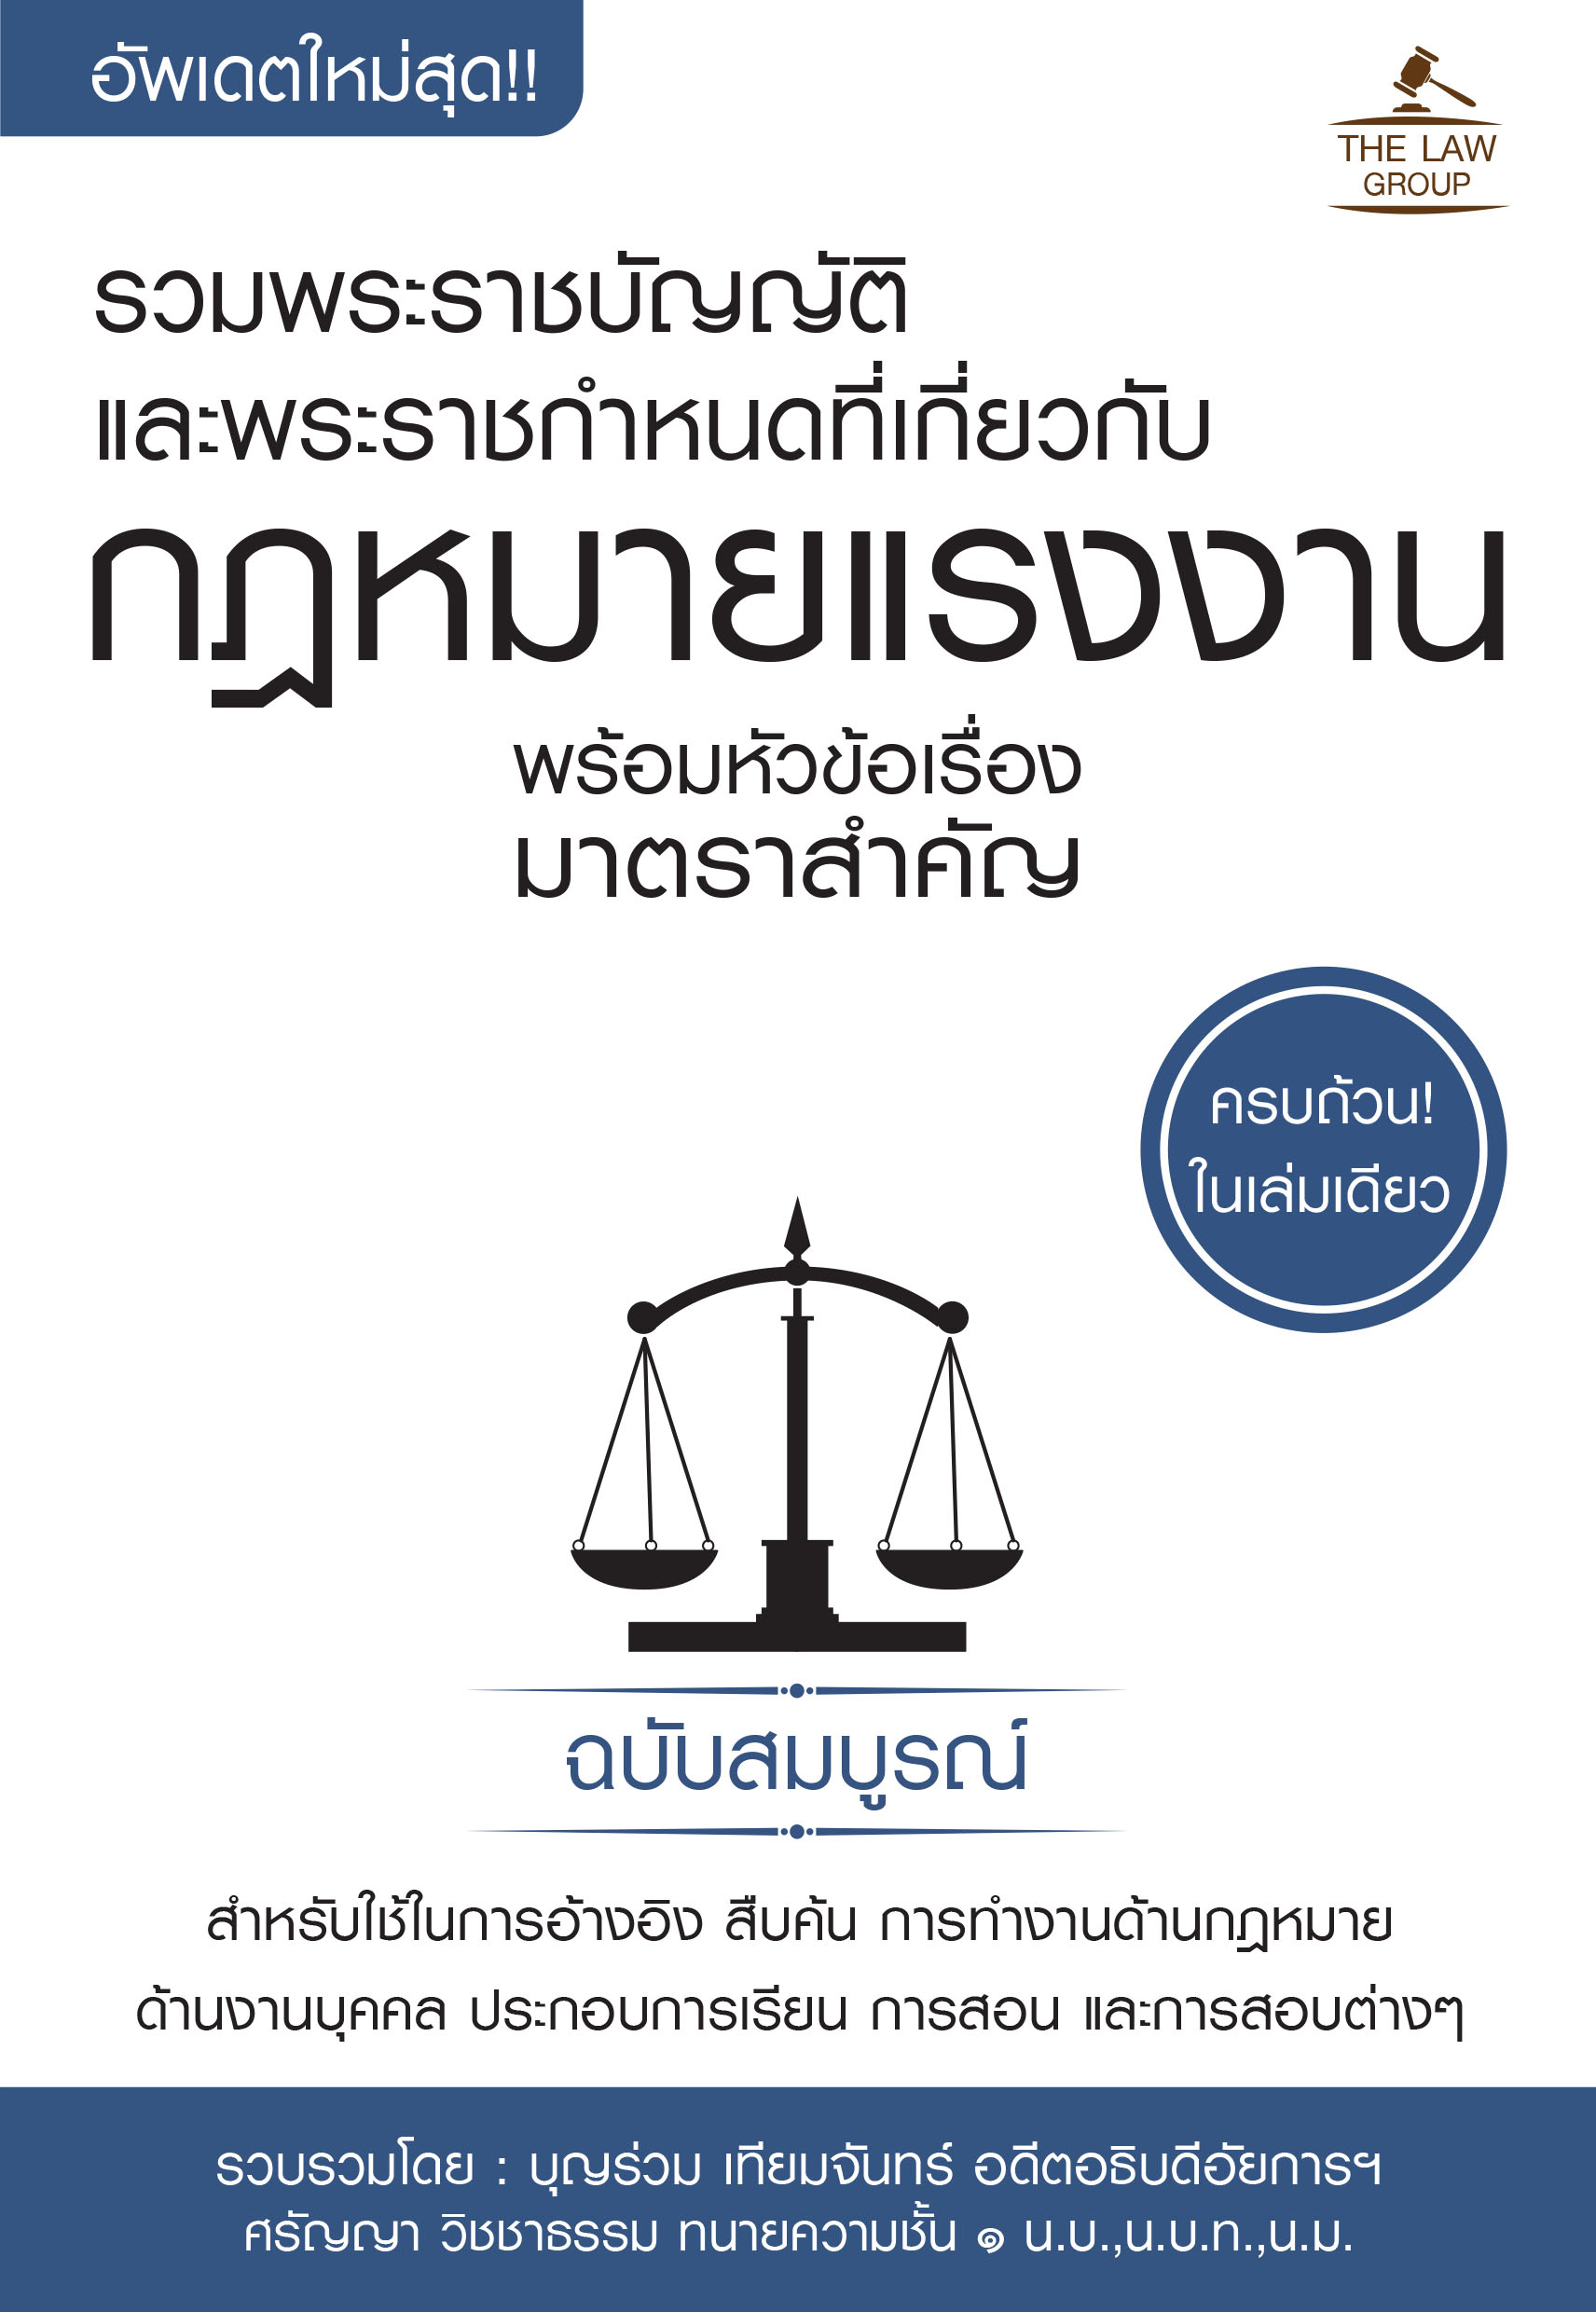 (INSPAL) หนังสือ รวมพระราชบัญญัติและพระราชกำหนดที่เกี่ยวกับกฎหมายแรงงาน พร้อมหัวข้อเรื่องมาตราสำคัญ ฉบับสมบูรณ์